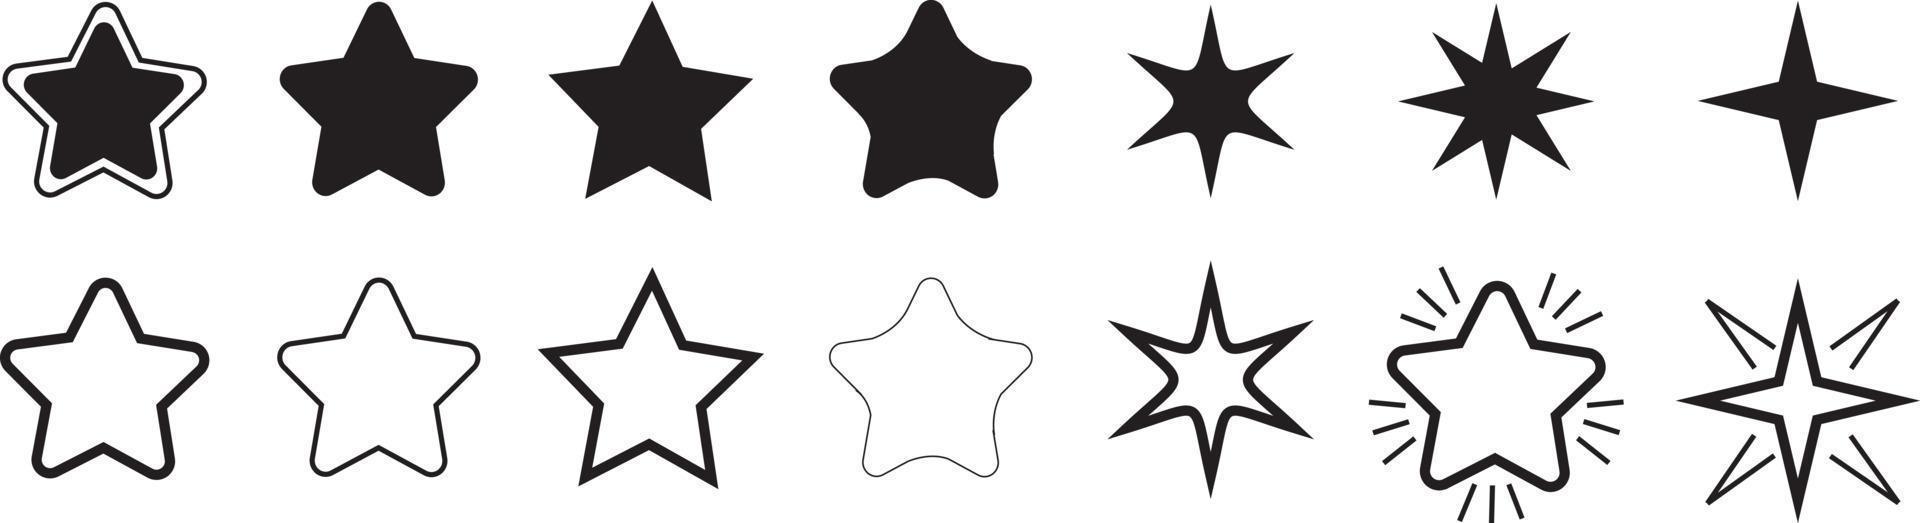 Sammlung von Sternsymbolen. verschiedene Sterne eingestellt. Vektor